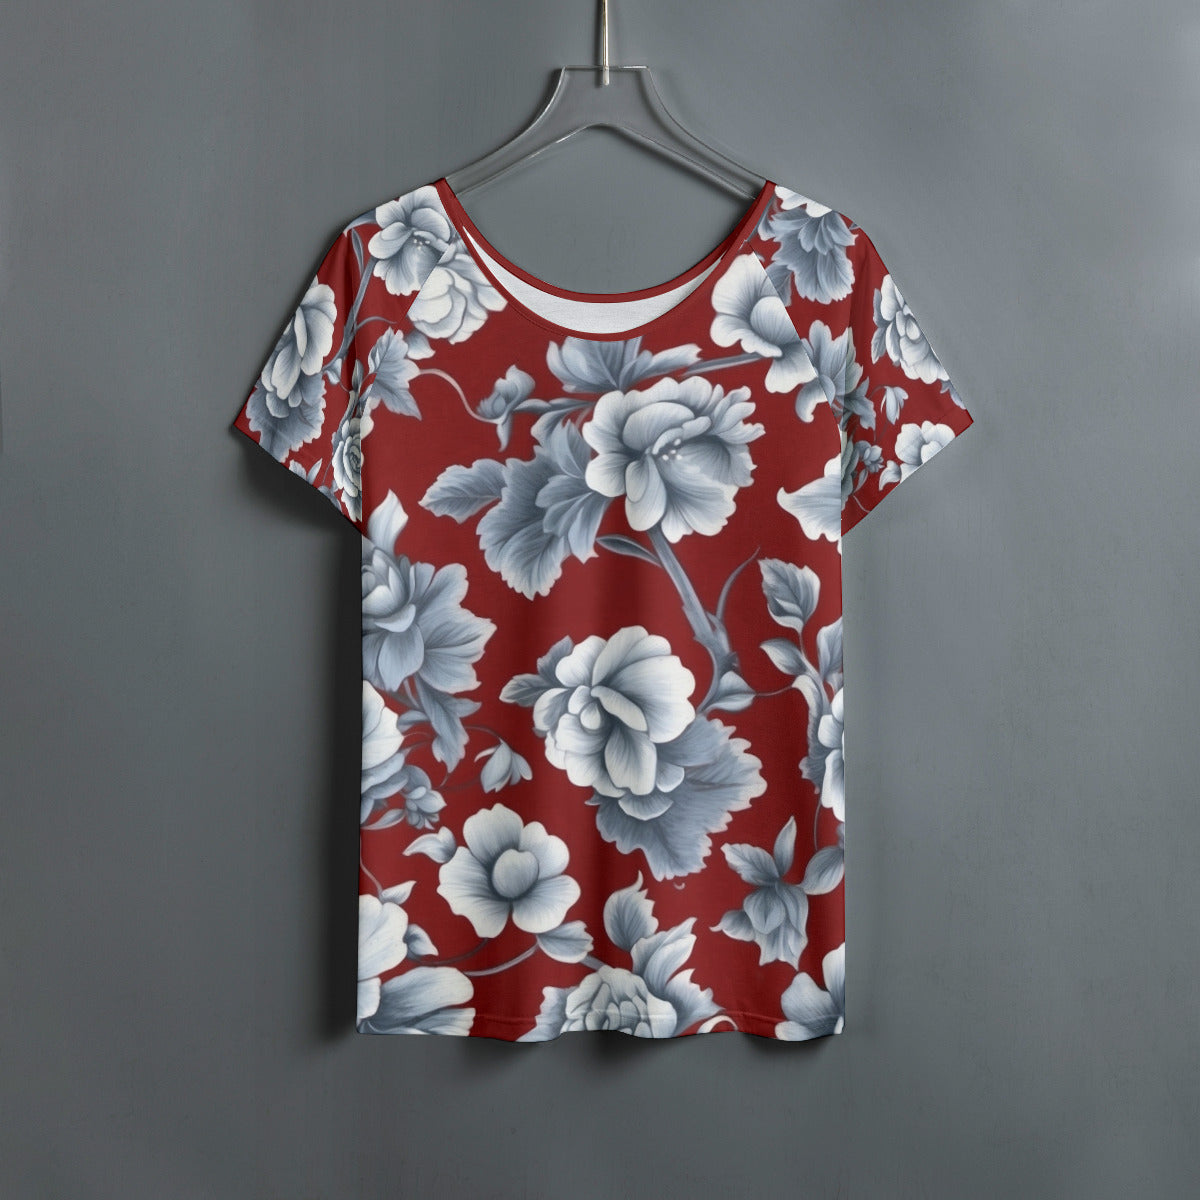 Pattern 197 -- Women's Round Neck T-shirt With Raglan Sleeve